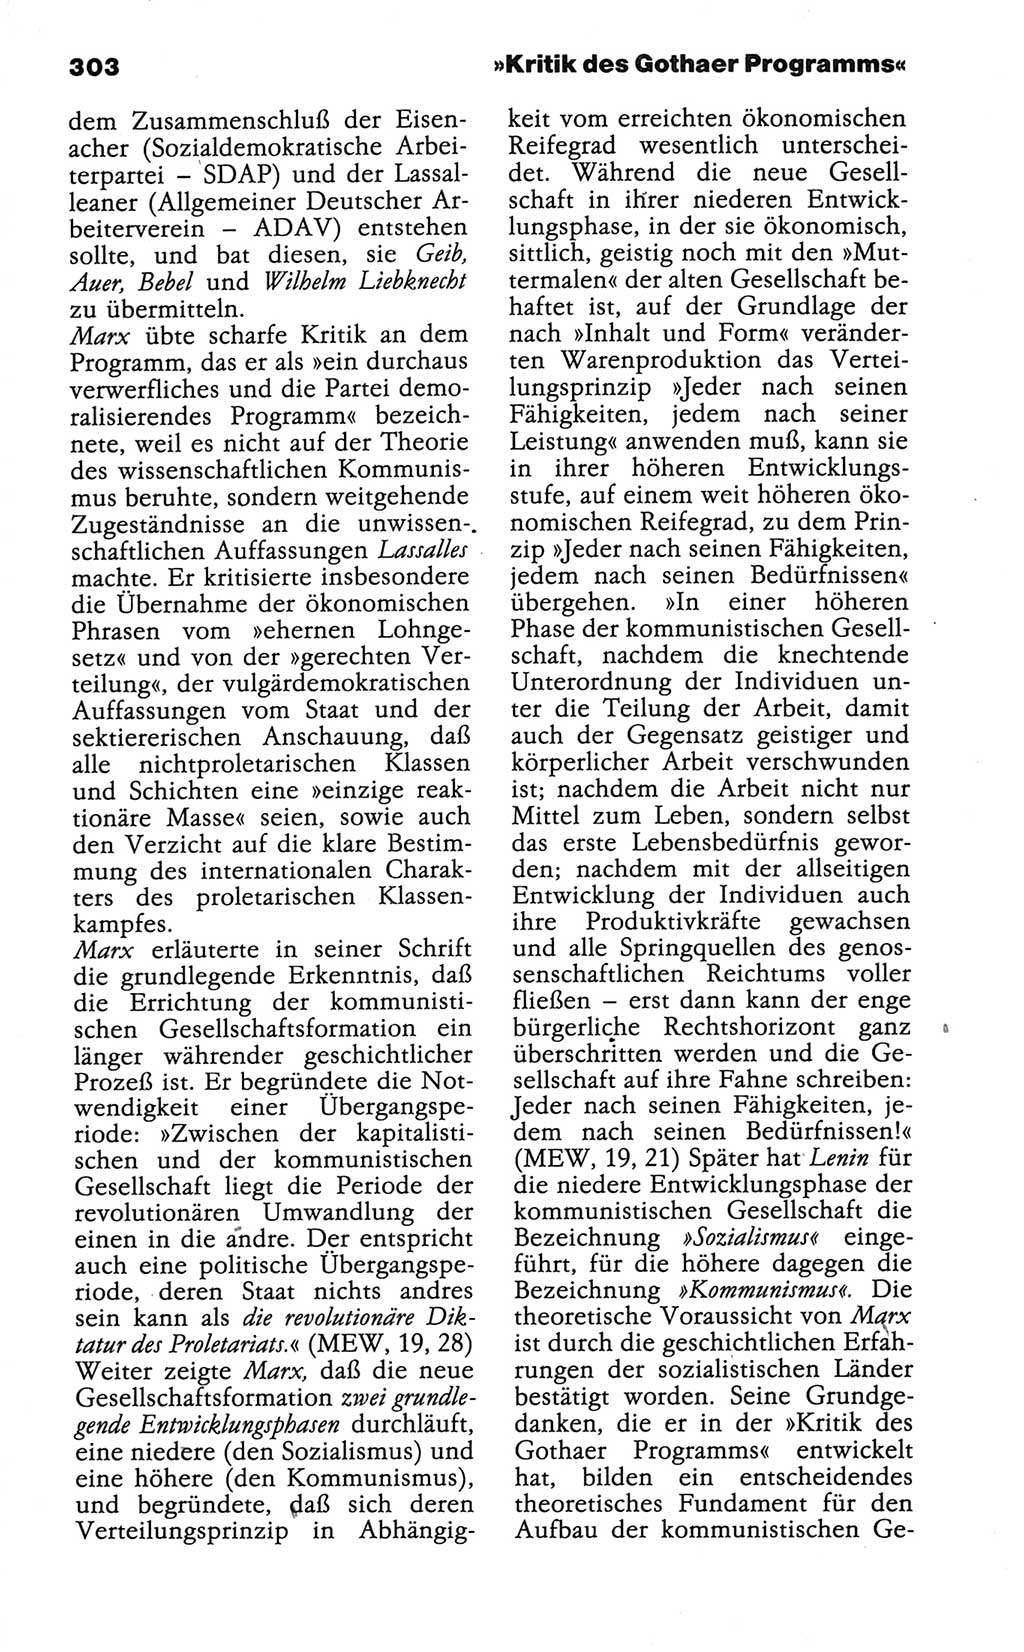 Wörterbuch der marxistisch-leninistischen Philosophie [Deutsche Demokratische Republik (DDR)] 1986, Seite 303 (Wb. ML Phil. DDR 1986, S. 303)